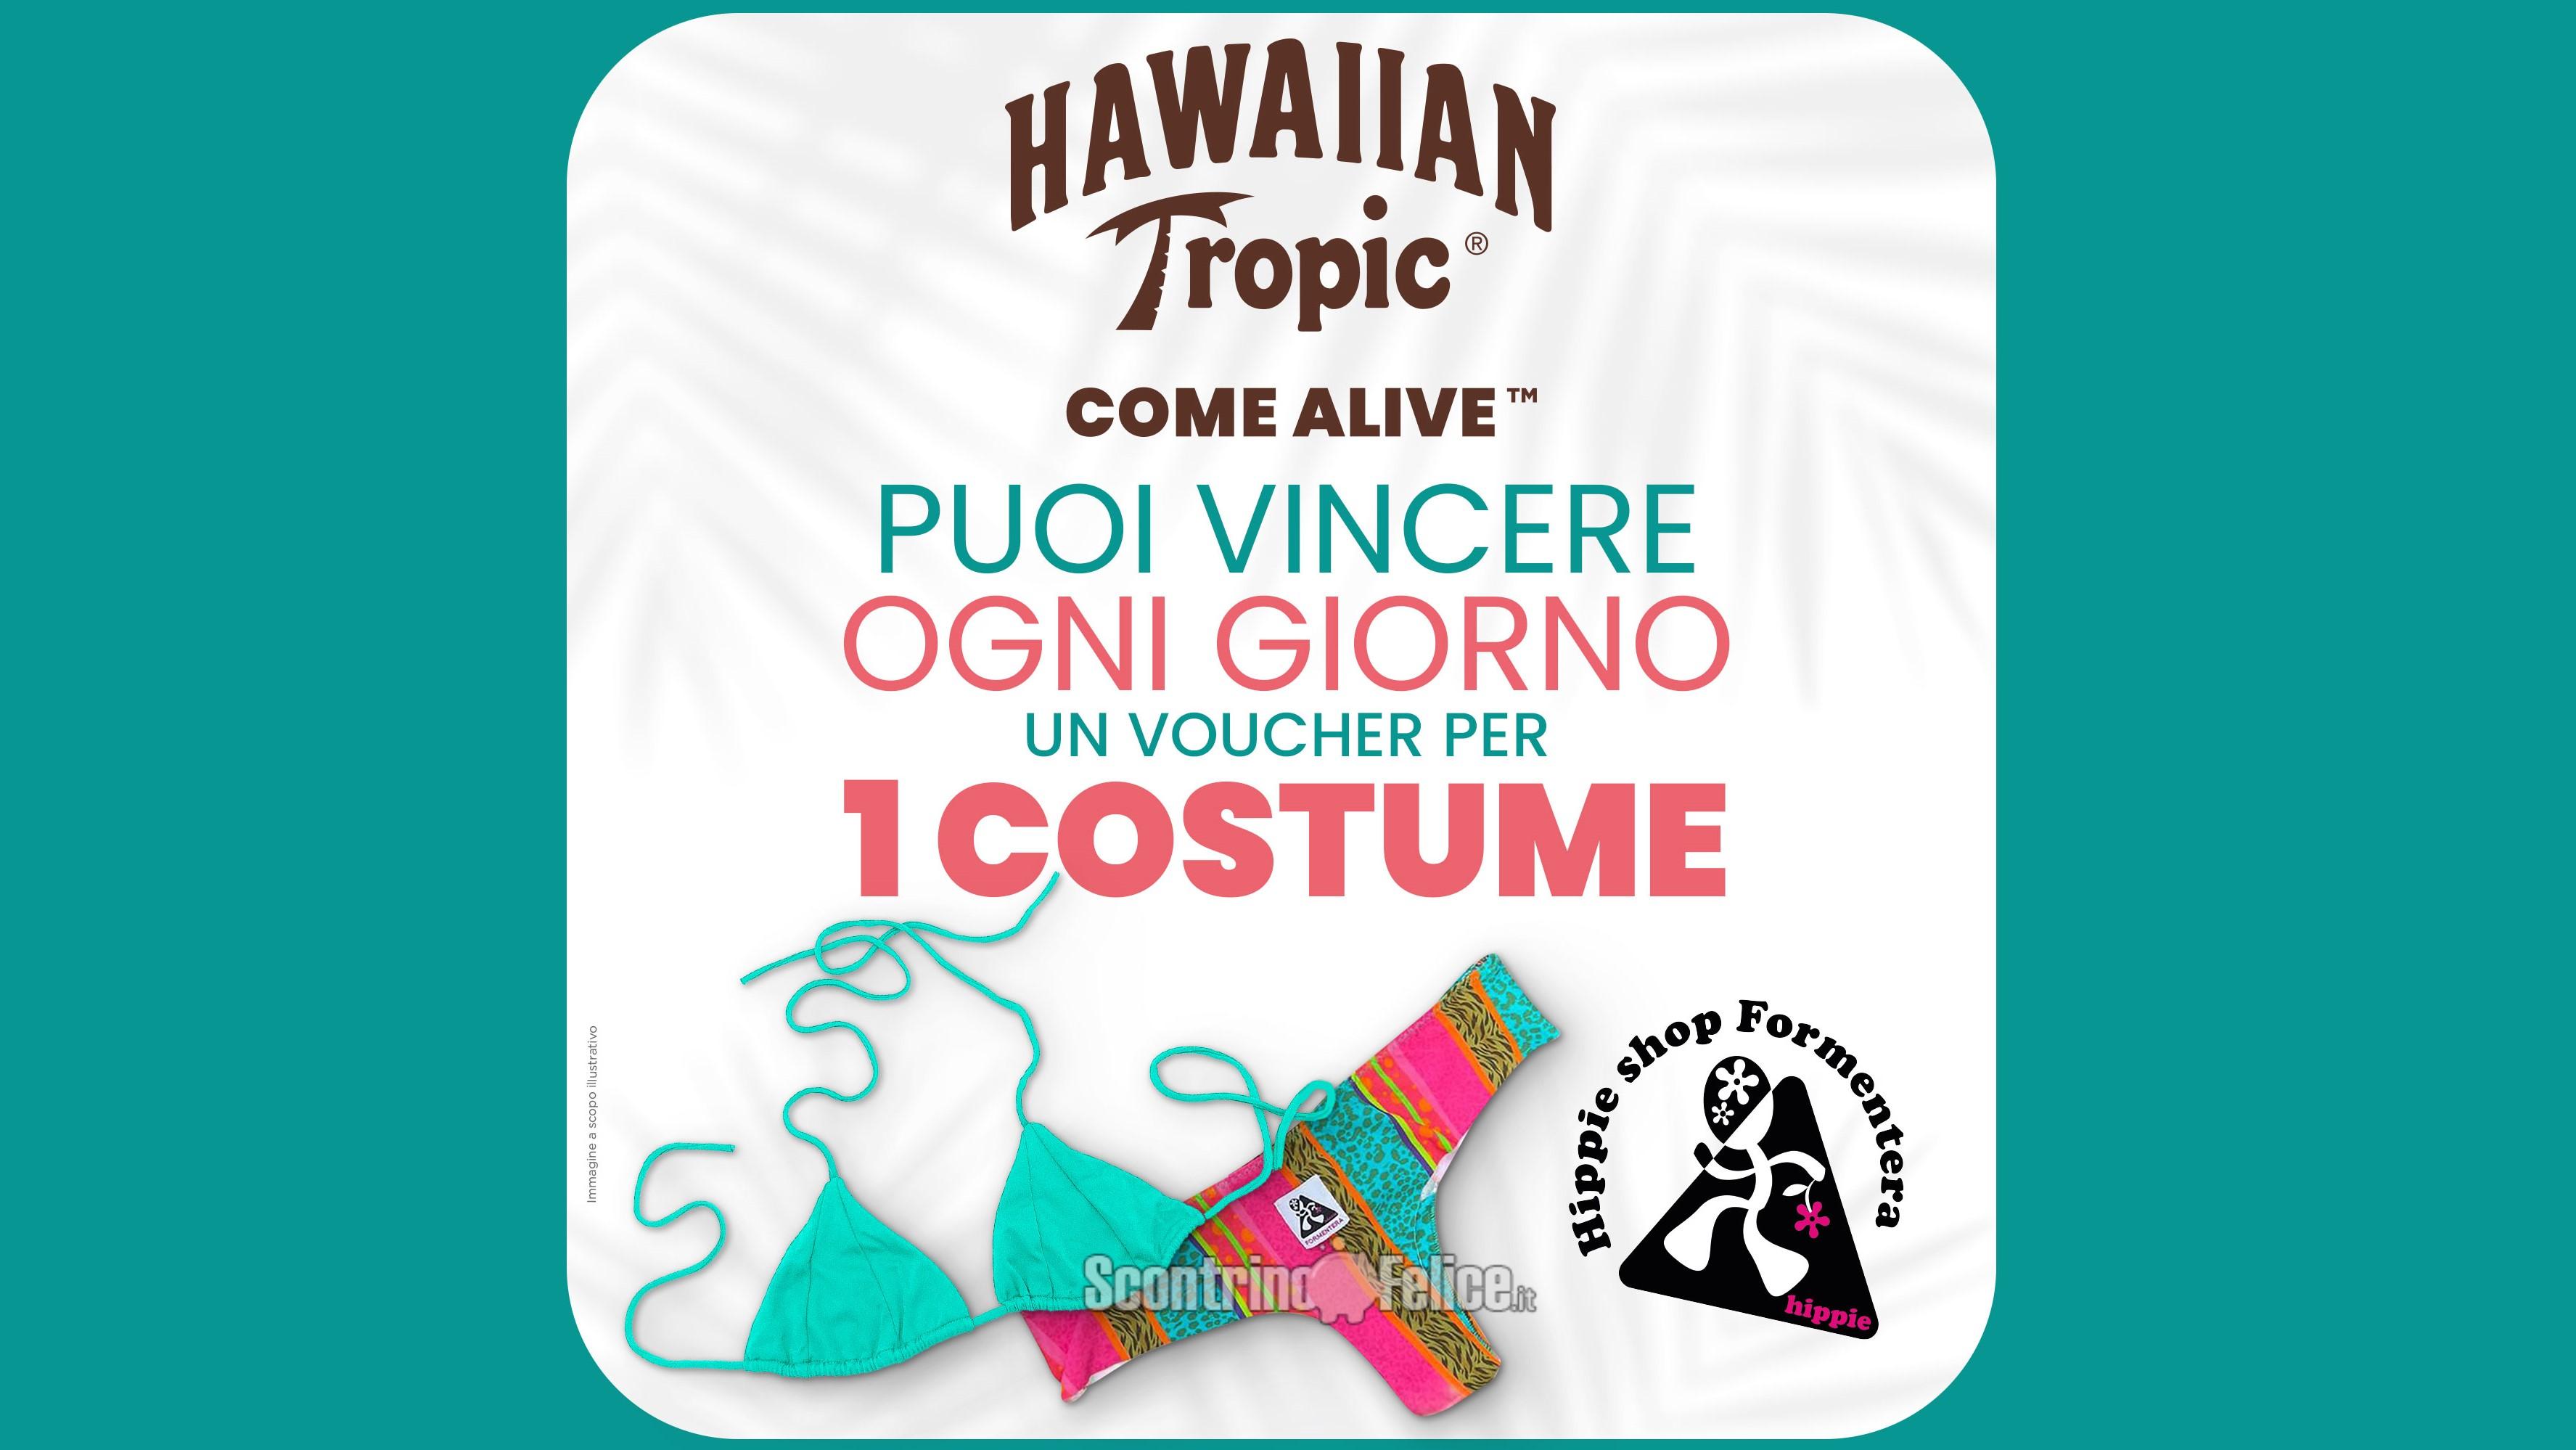 Concorso Hawaiian Tropic 2022: vinci 168 voucher Hippie Shop Formentera da 50 euro per acquistare un costume da bagno!